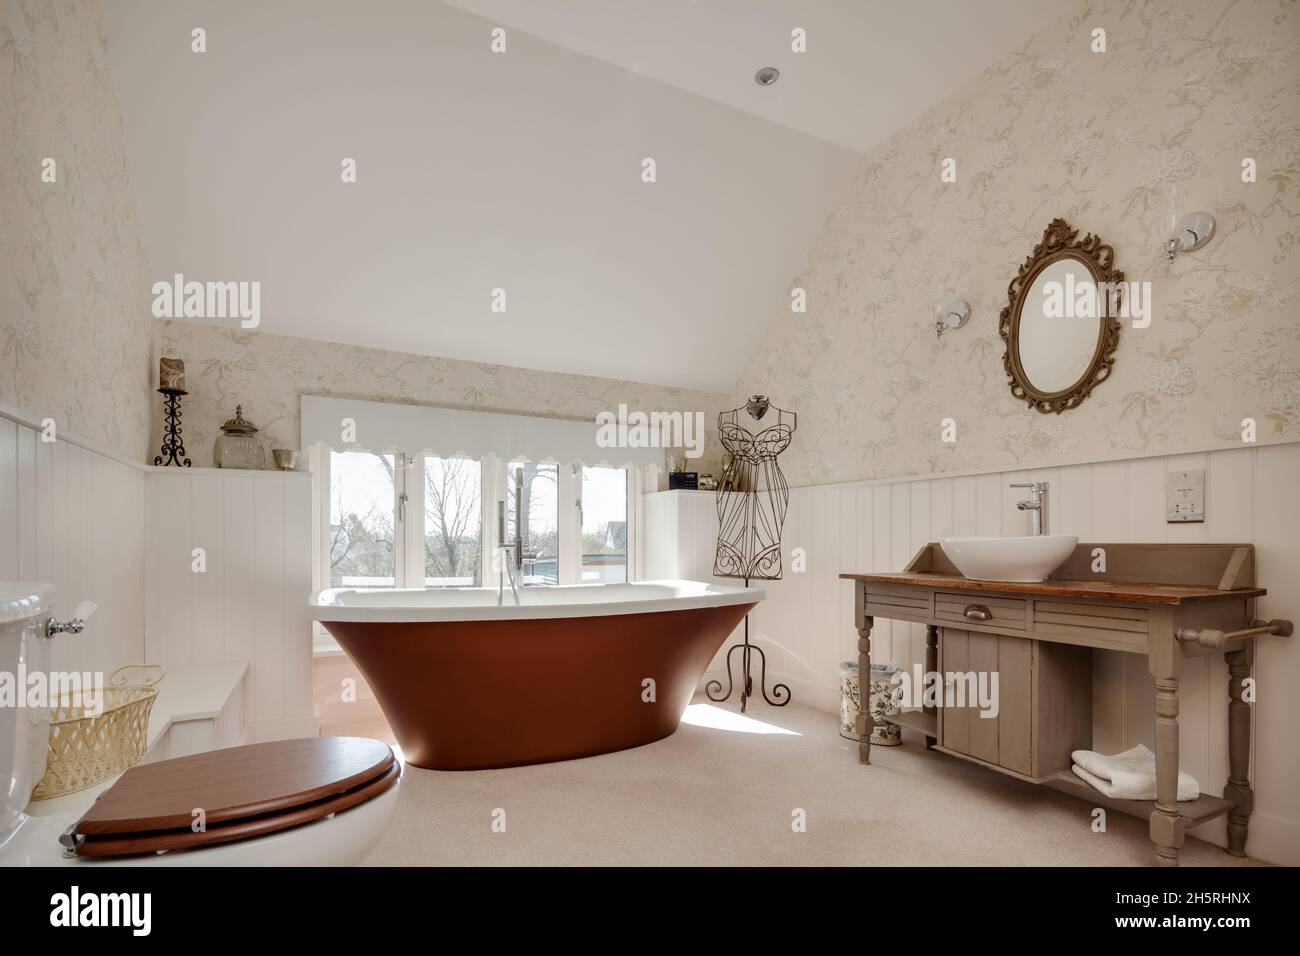 Suffolk, Angleterre - Mars 2018: WC de salle de bains avec bassin en céramique sur plinthe en bois, demi-murs en bois et baignoire sur pied. Banque D'Images